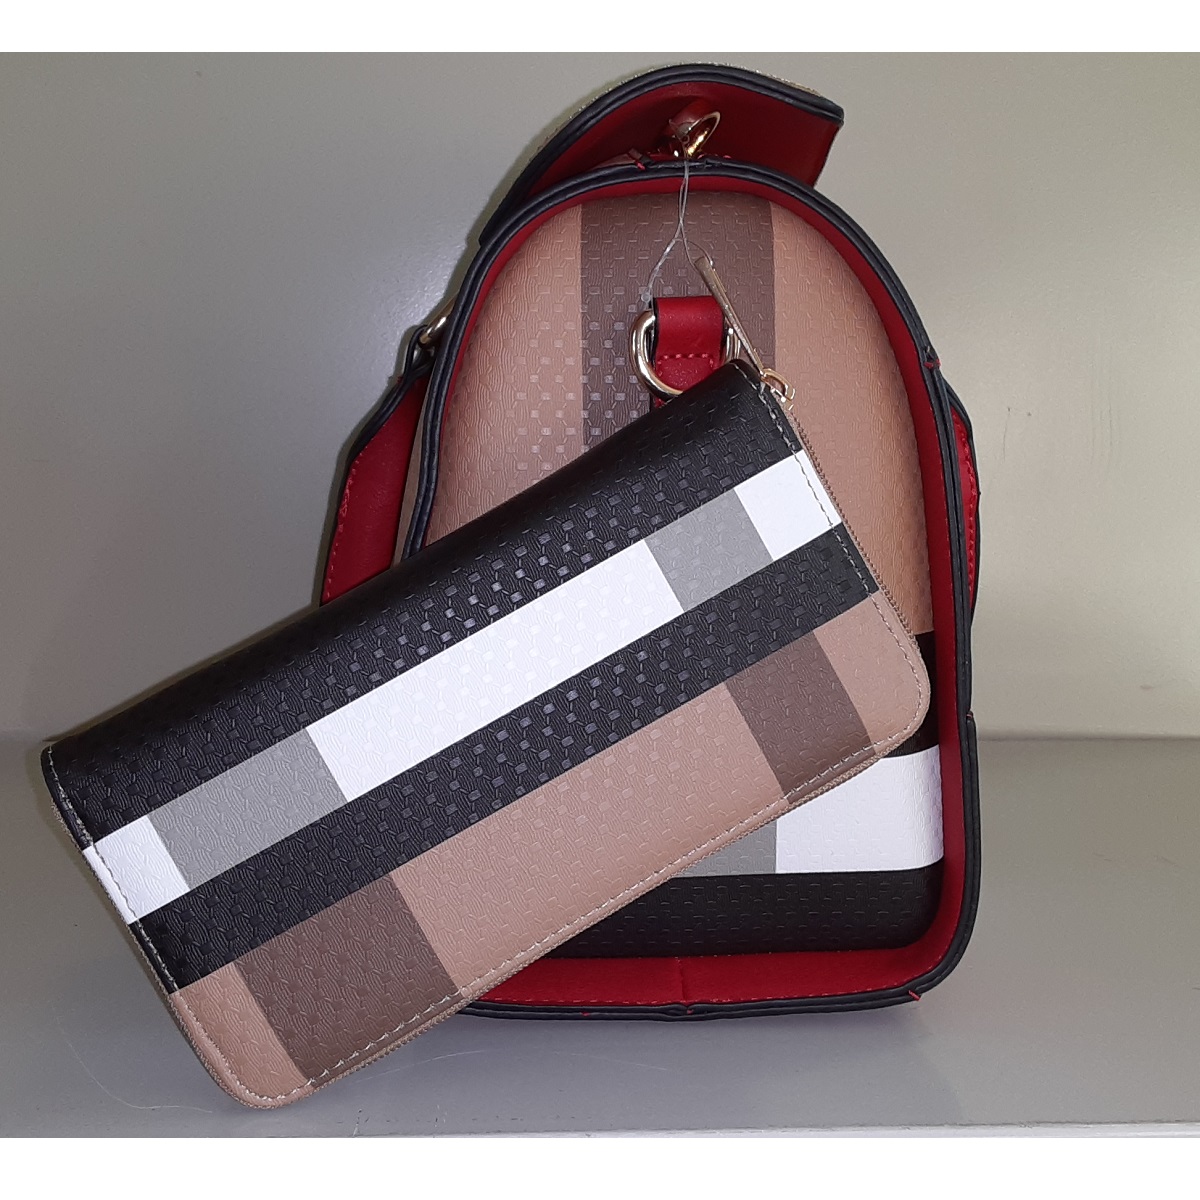 Red & Brown Handbag - 2-Piece Set Vegan Leather handbag with smaller companion bag